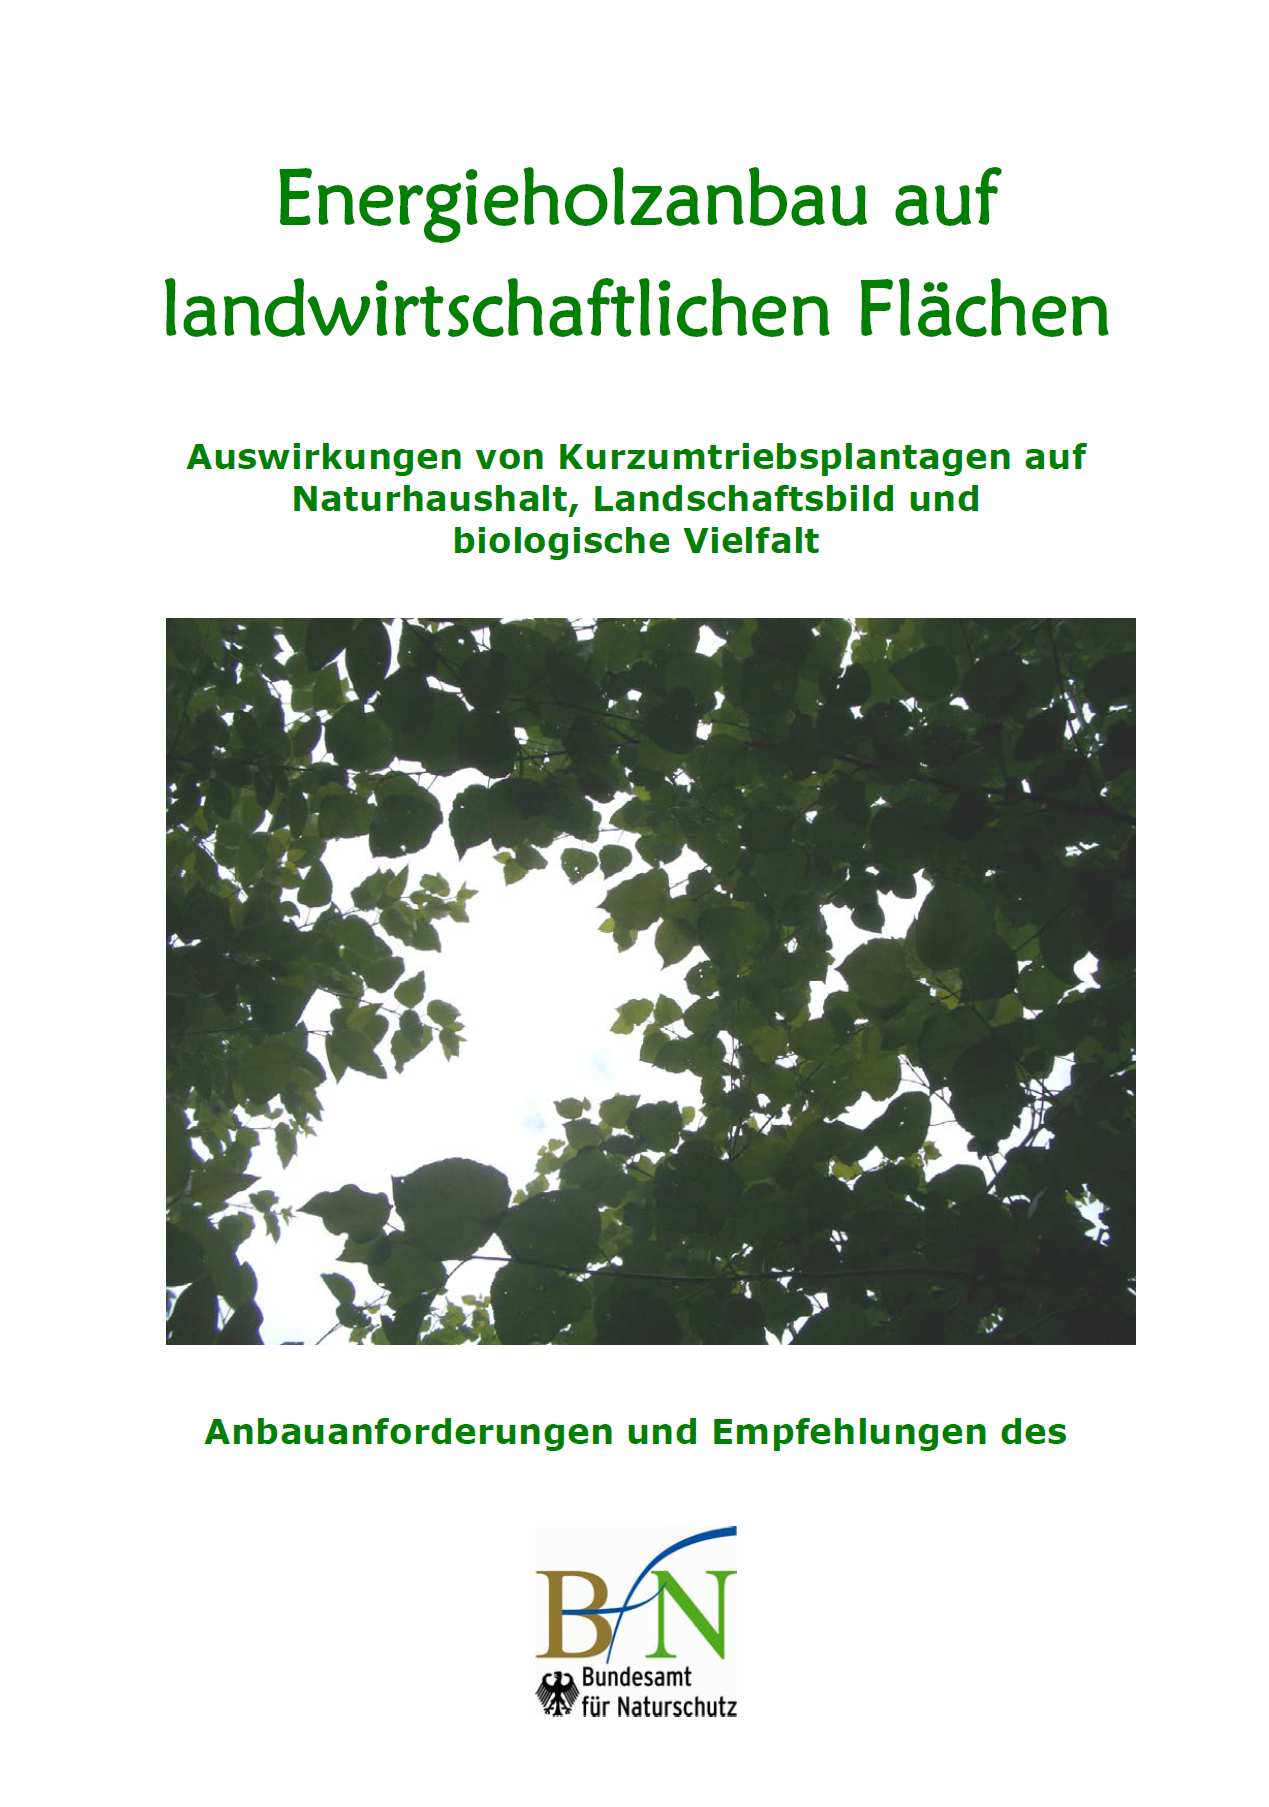 Kathrin Ammermann FGL in Erneuerbare Energien / Berg- und Bodenabbau Bundesamt für